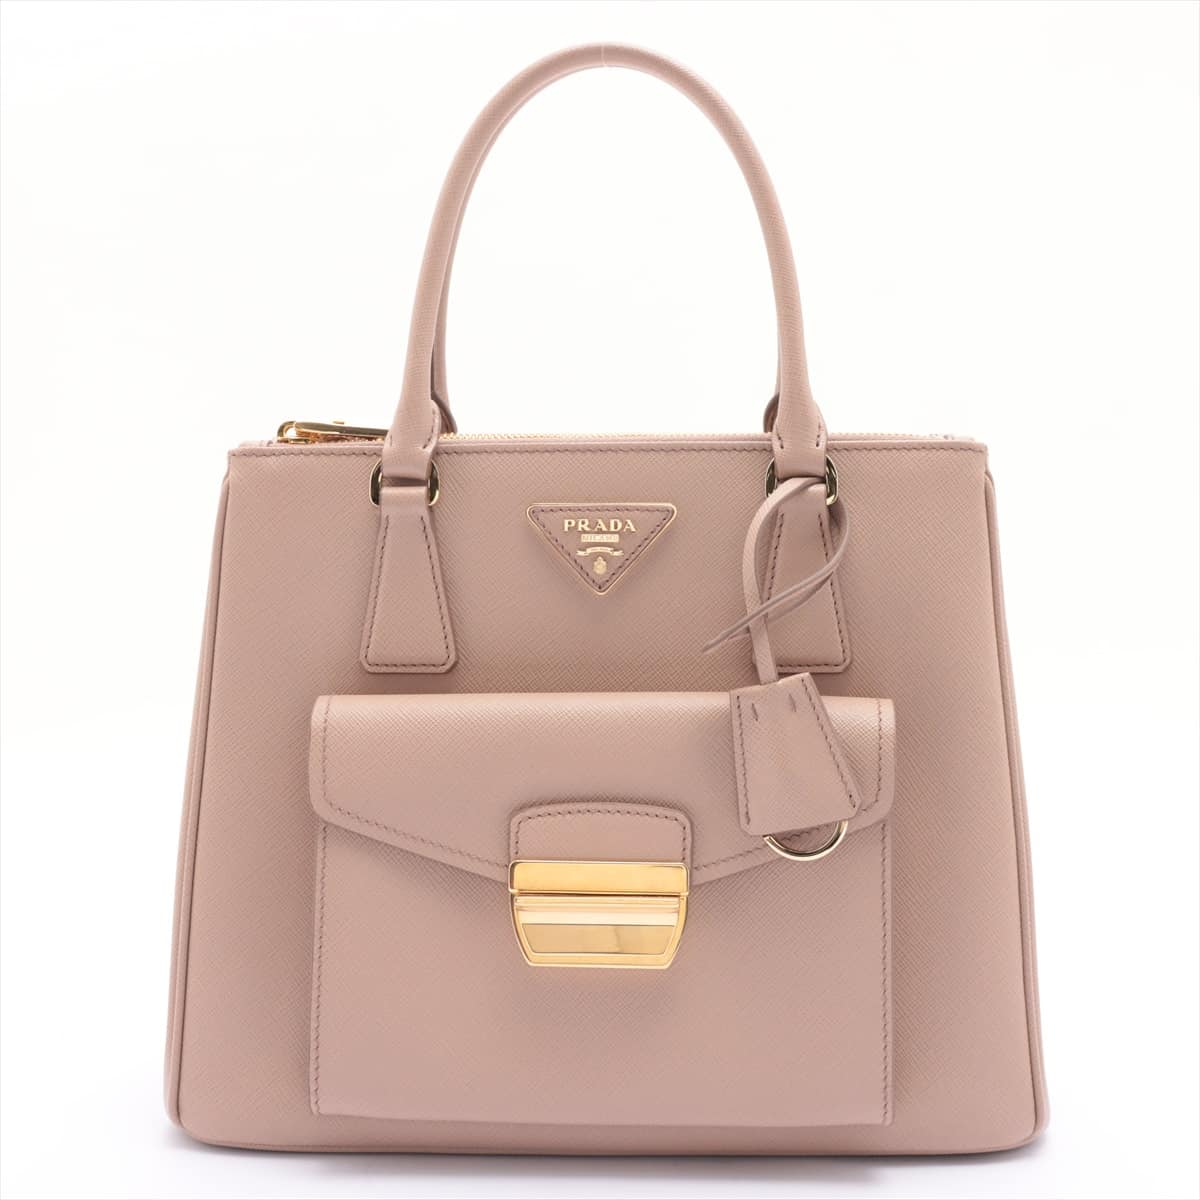 Prada Saffiano Lux 2way handbag Beige 1BA256 open papers